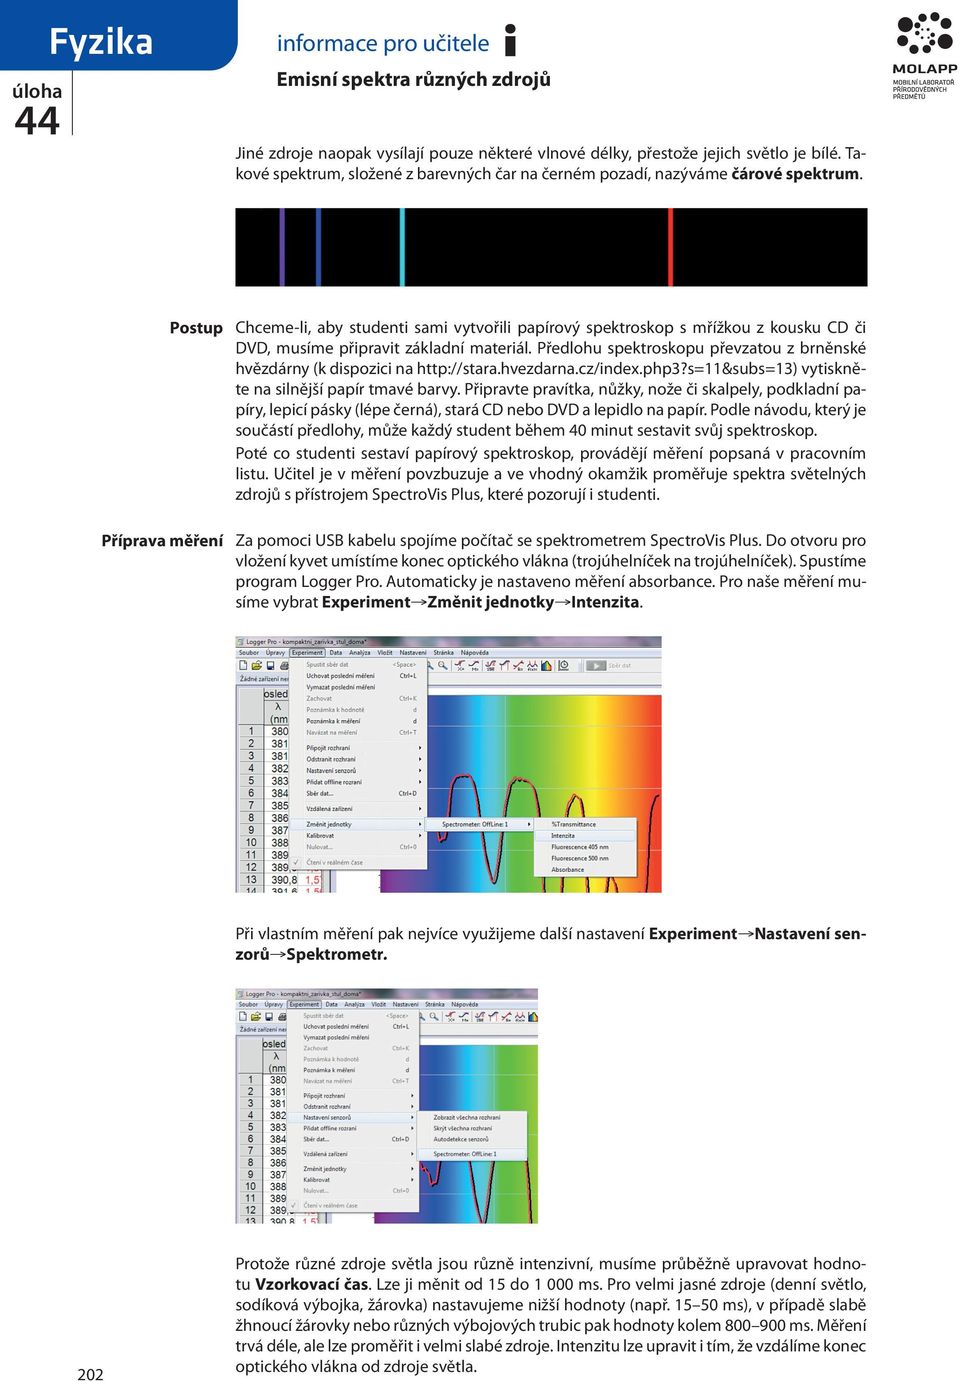 Předlohu spektroskopu převzatou z brněnské hvězdárny (k dispozici na http://stara.hvezdarna.cz/index.php3?s=11&subs=13) vytiskněte na silnější papír tmavé barvy.